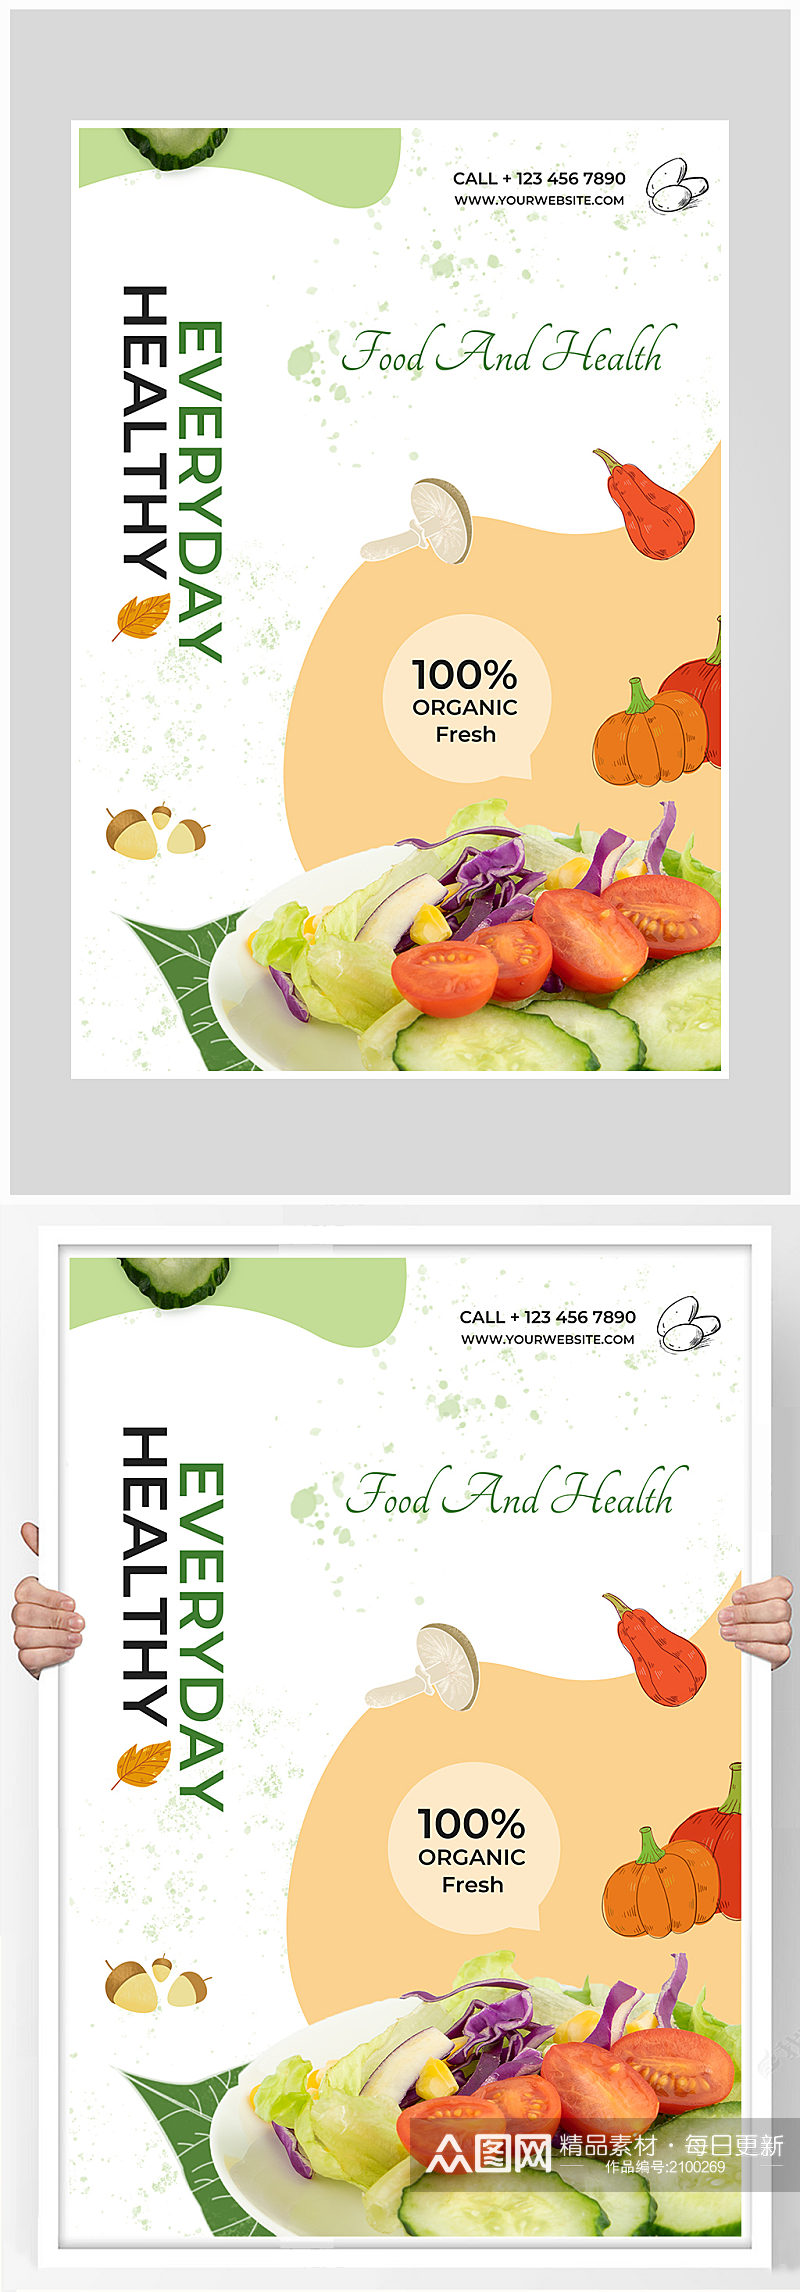 创意蔬菜沙拉健康食品海报设计素材